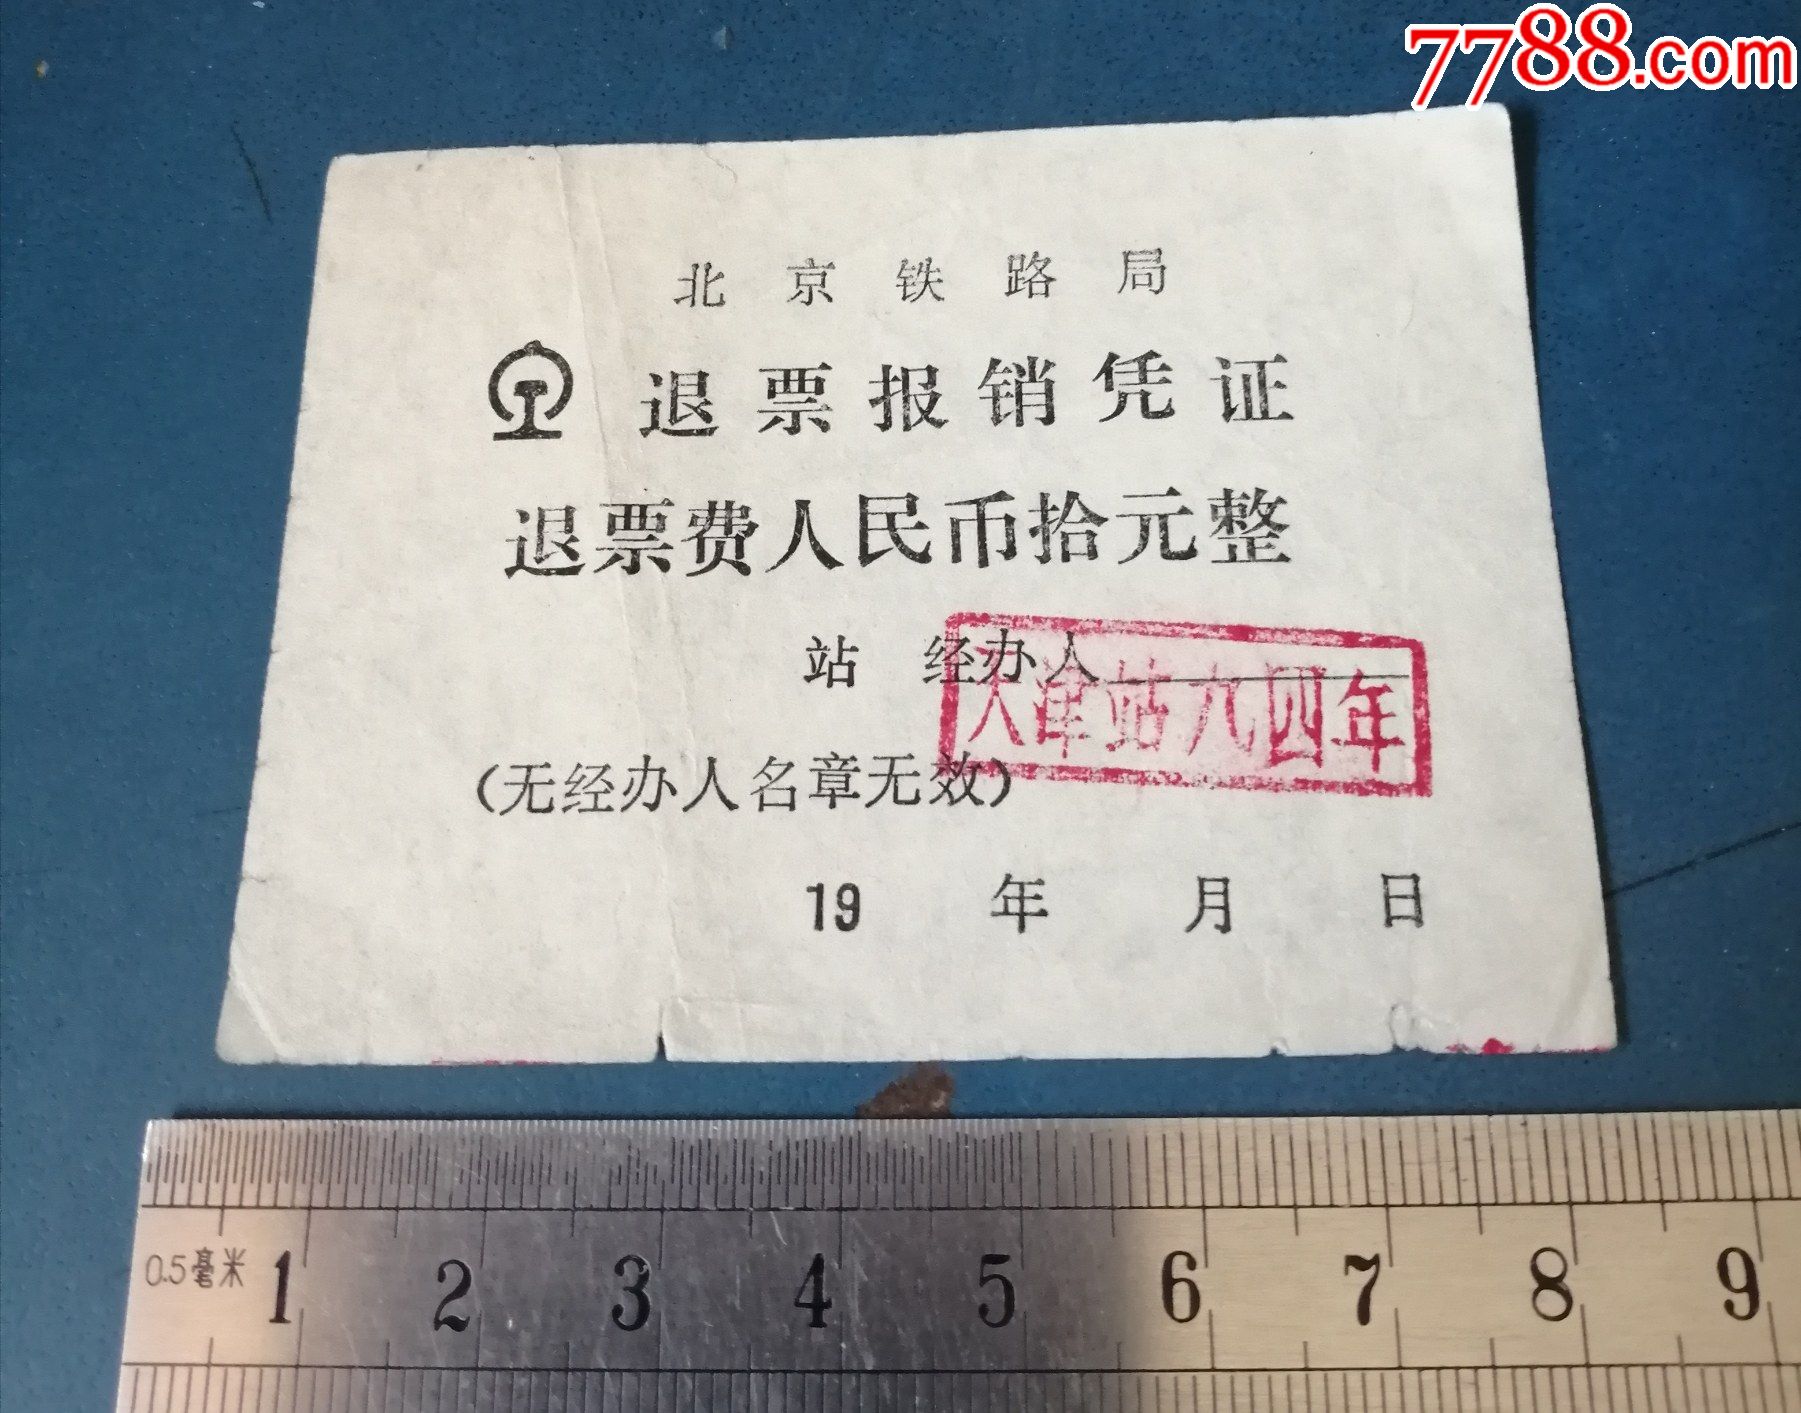 北京铁路局的退票凭证